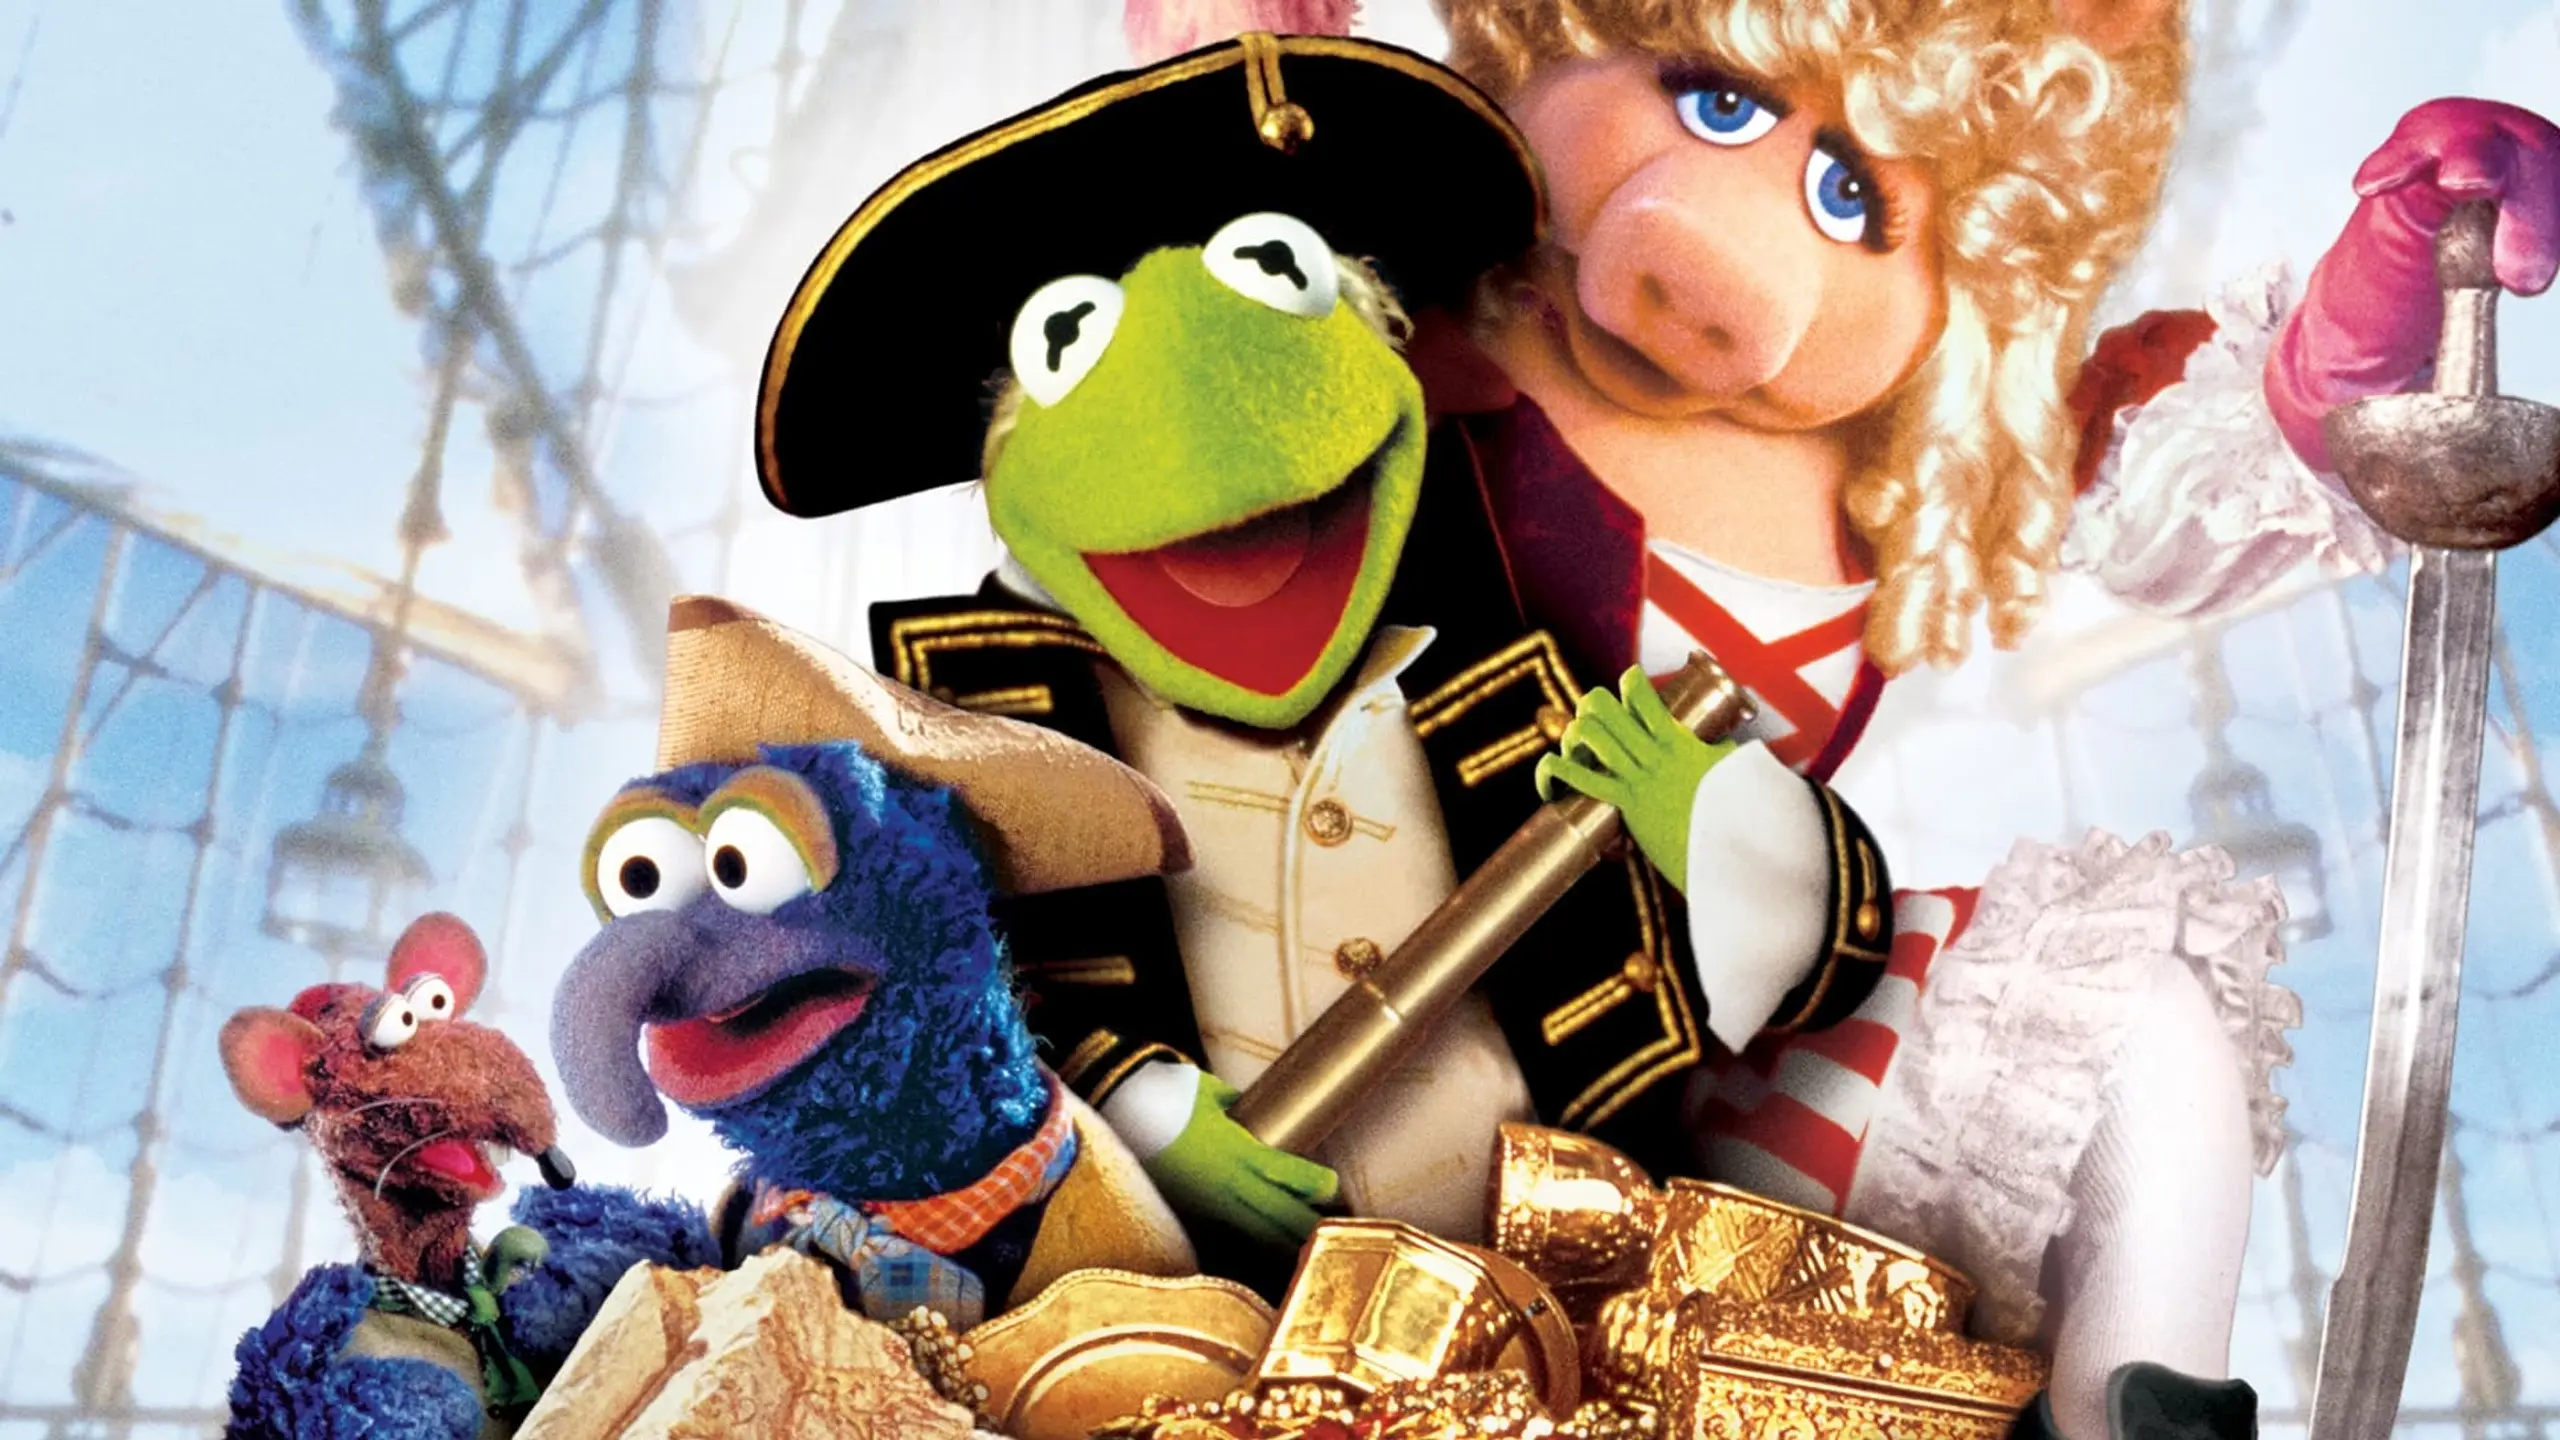 Muppets - Die Schatzinsel